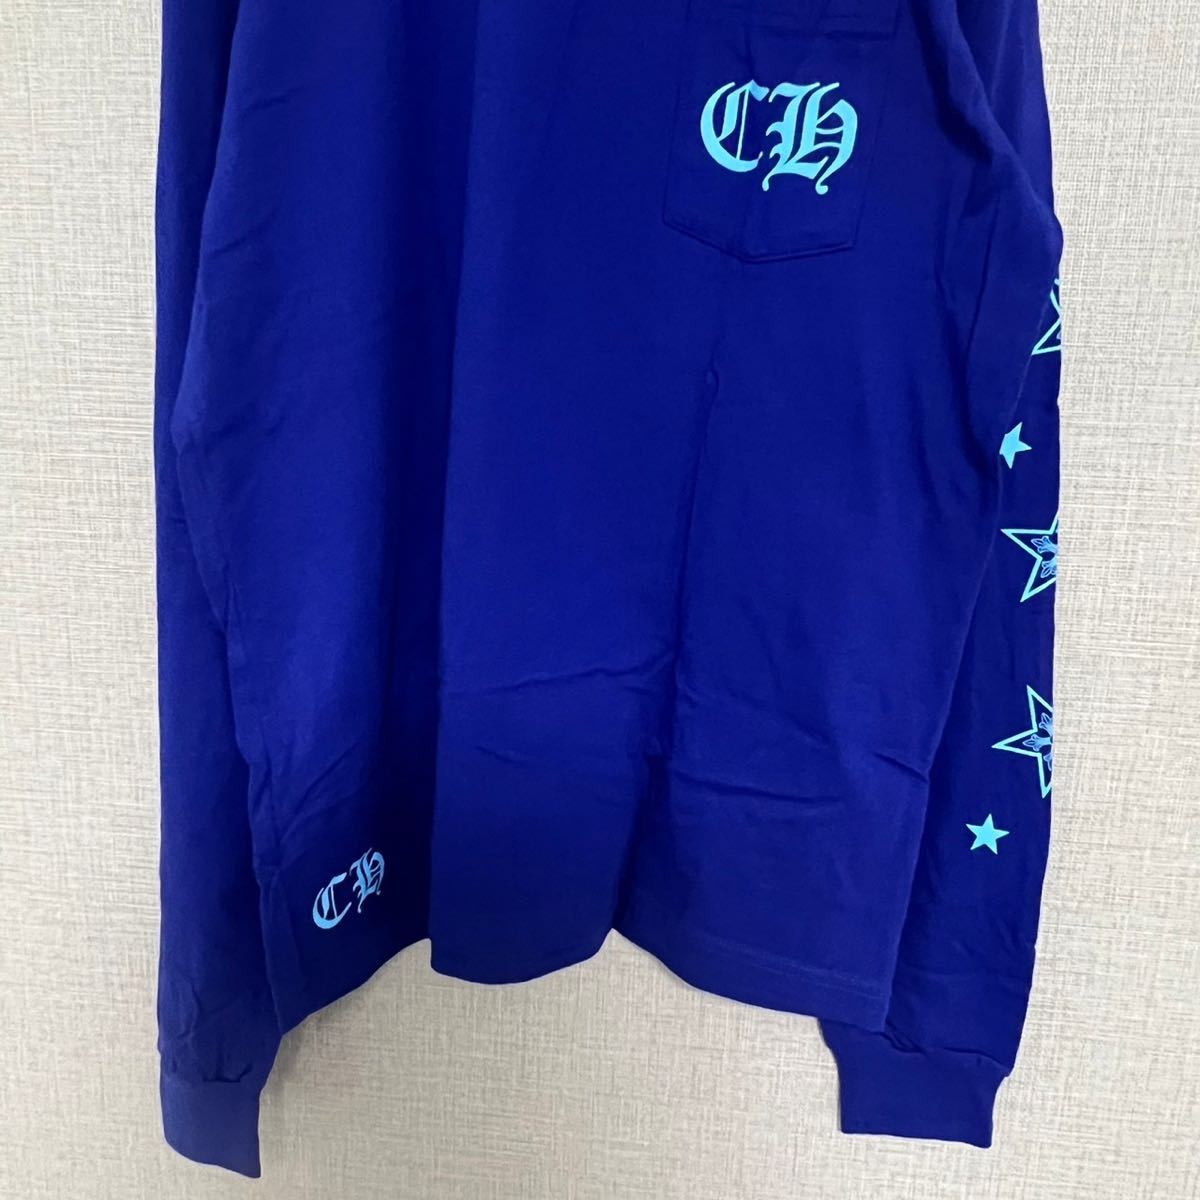 未使用新品 クロムハーツ 長袖Tシャツ トップス ブルー XL 約13万円-